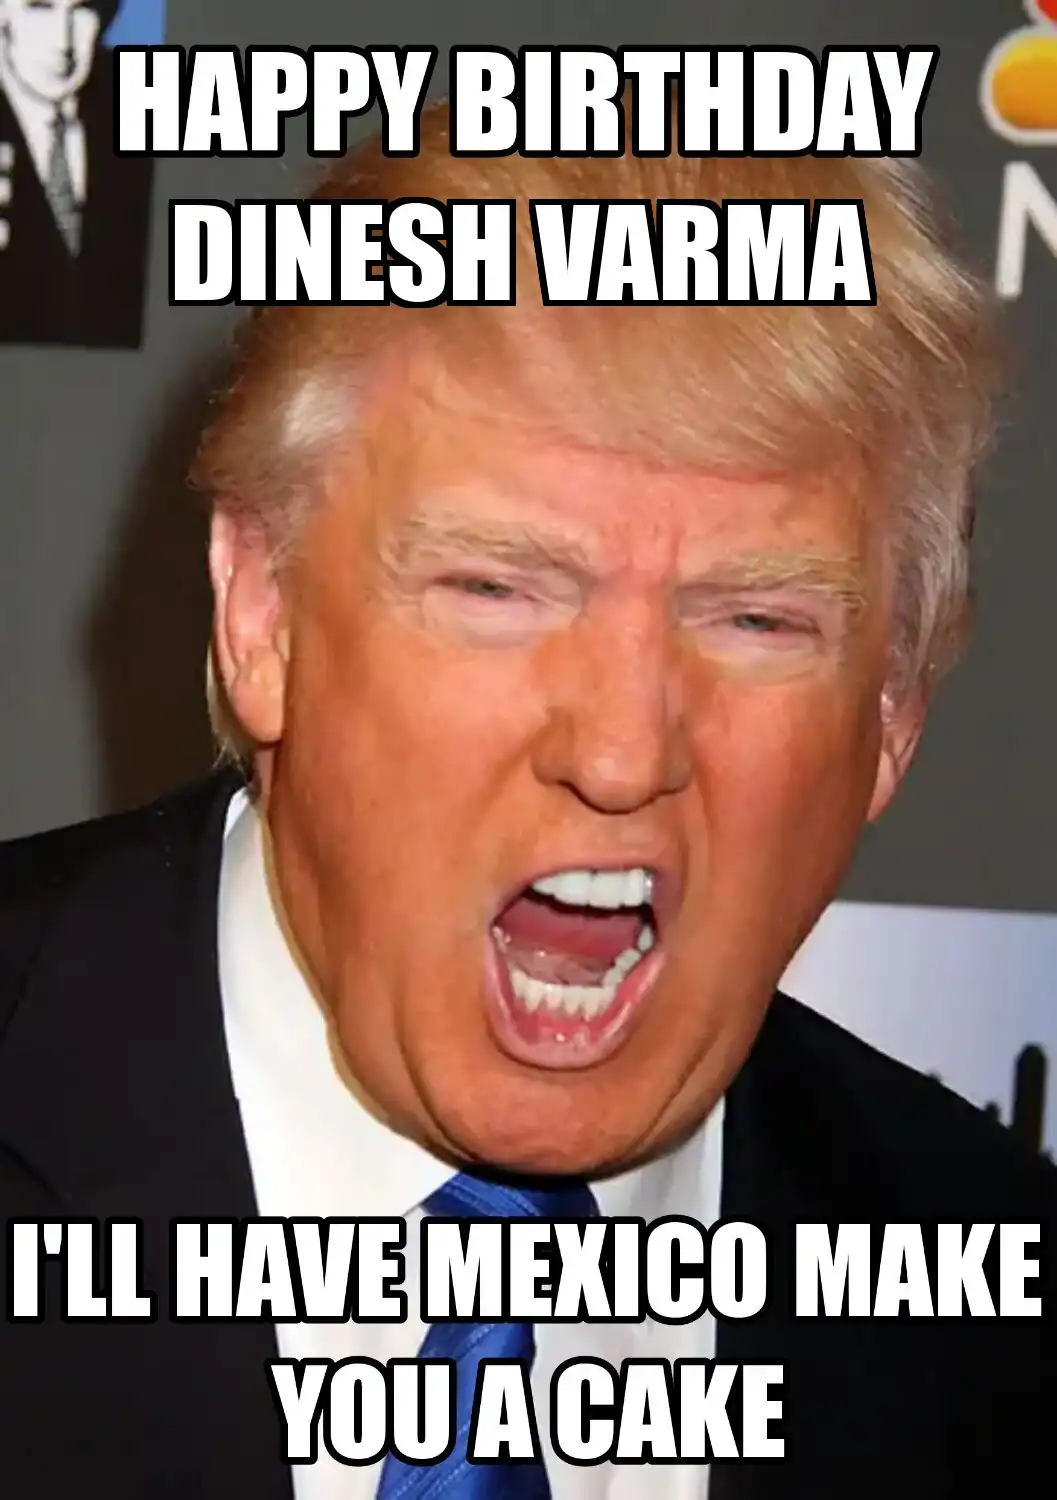 Happy Birthday Dinesh varma Mexico Make You A Cake Meme